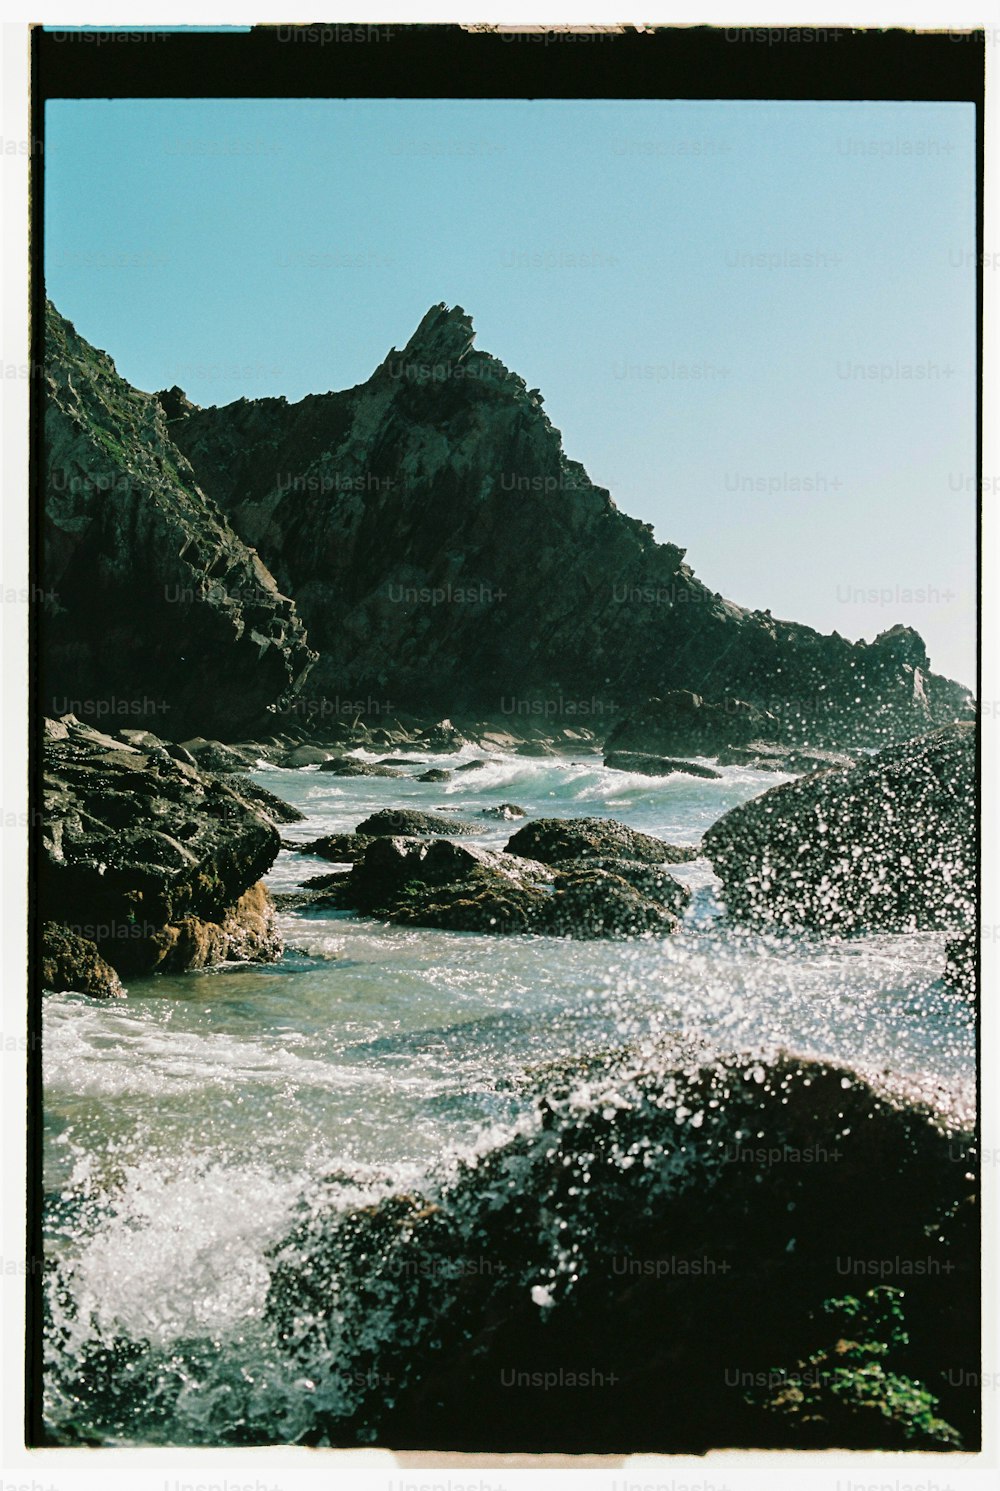 Une photo d’une plage rocheuse avec une planche de surf dans l’eau